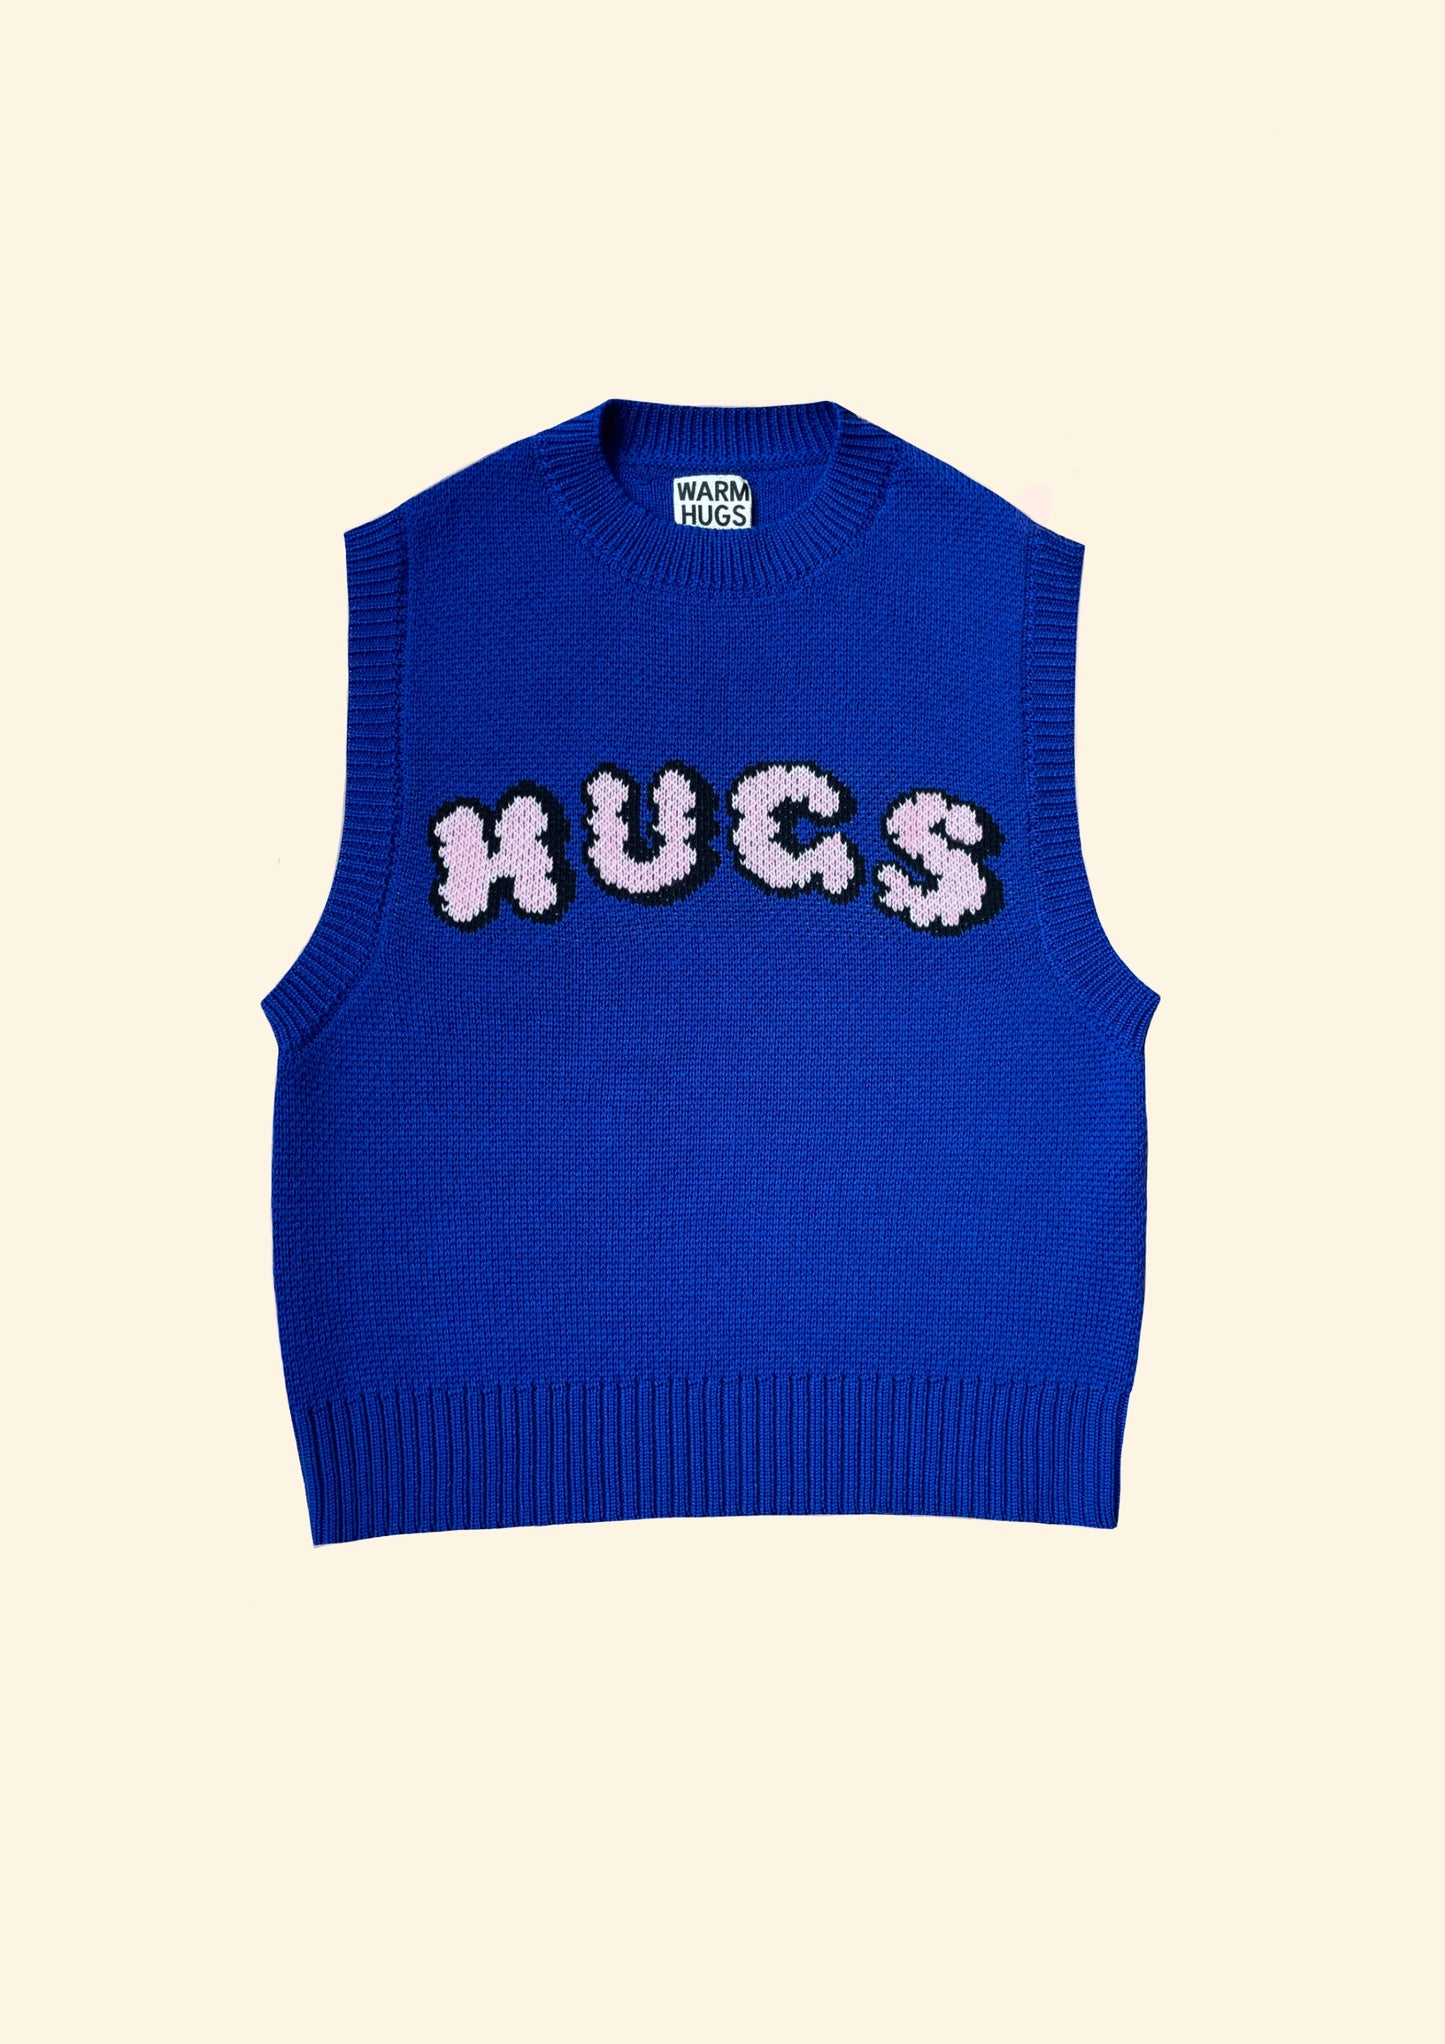 Blue HUGS vest